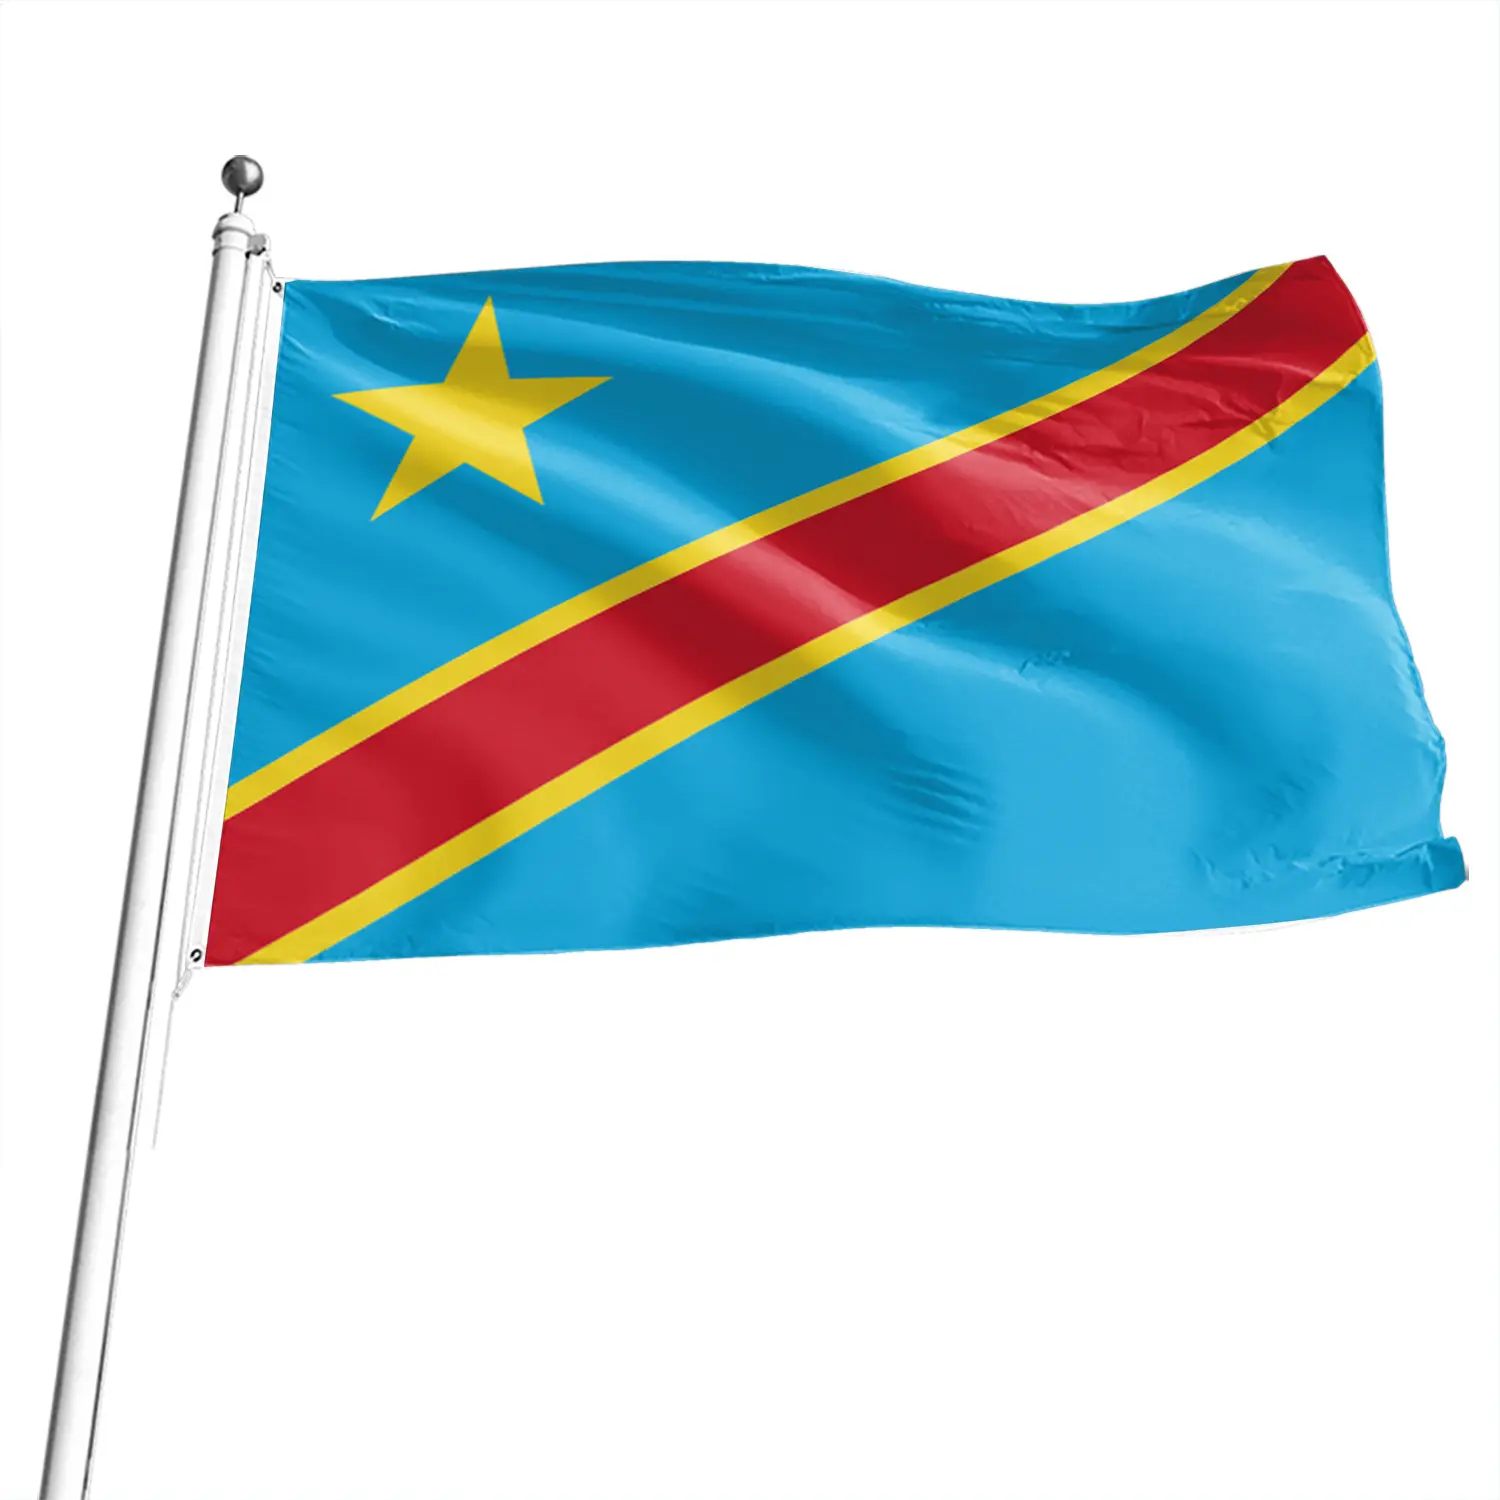 Vente en gros 3 * 5FT polyester suspendu toutes tailles pays personnalisé drapeau national de la République démocratique du Congo